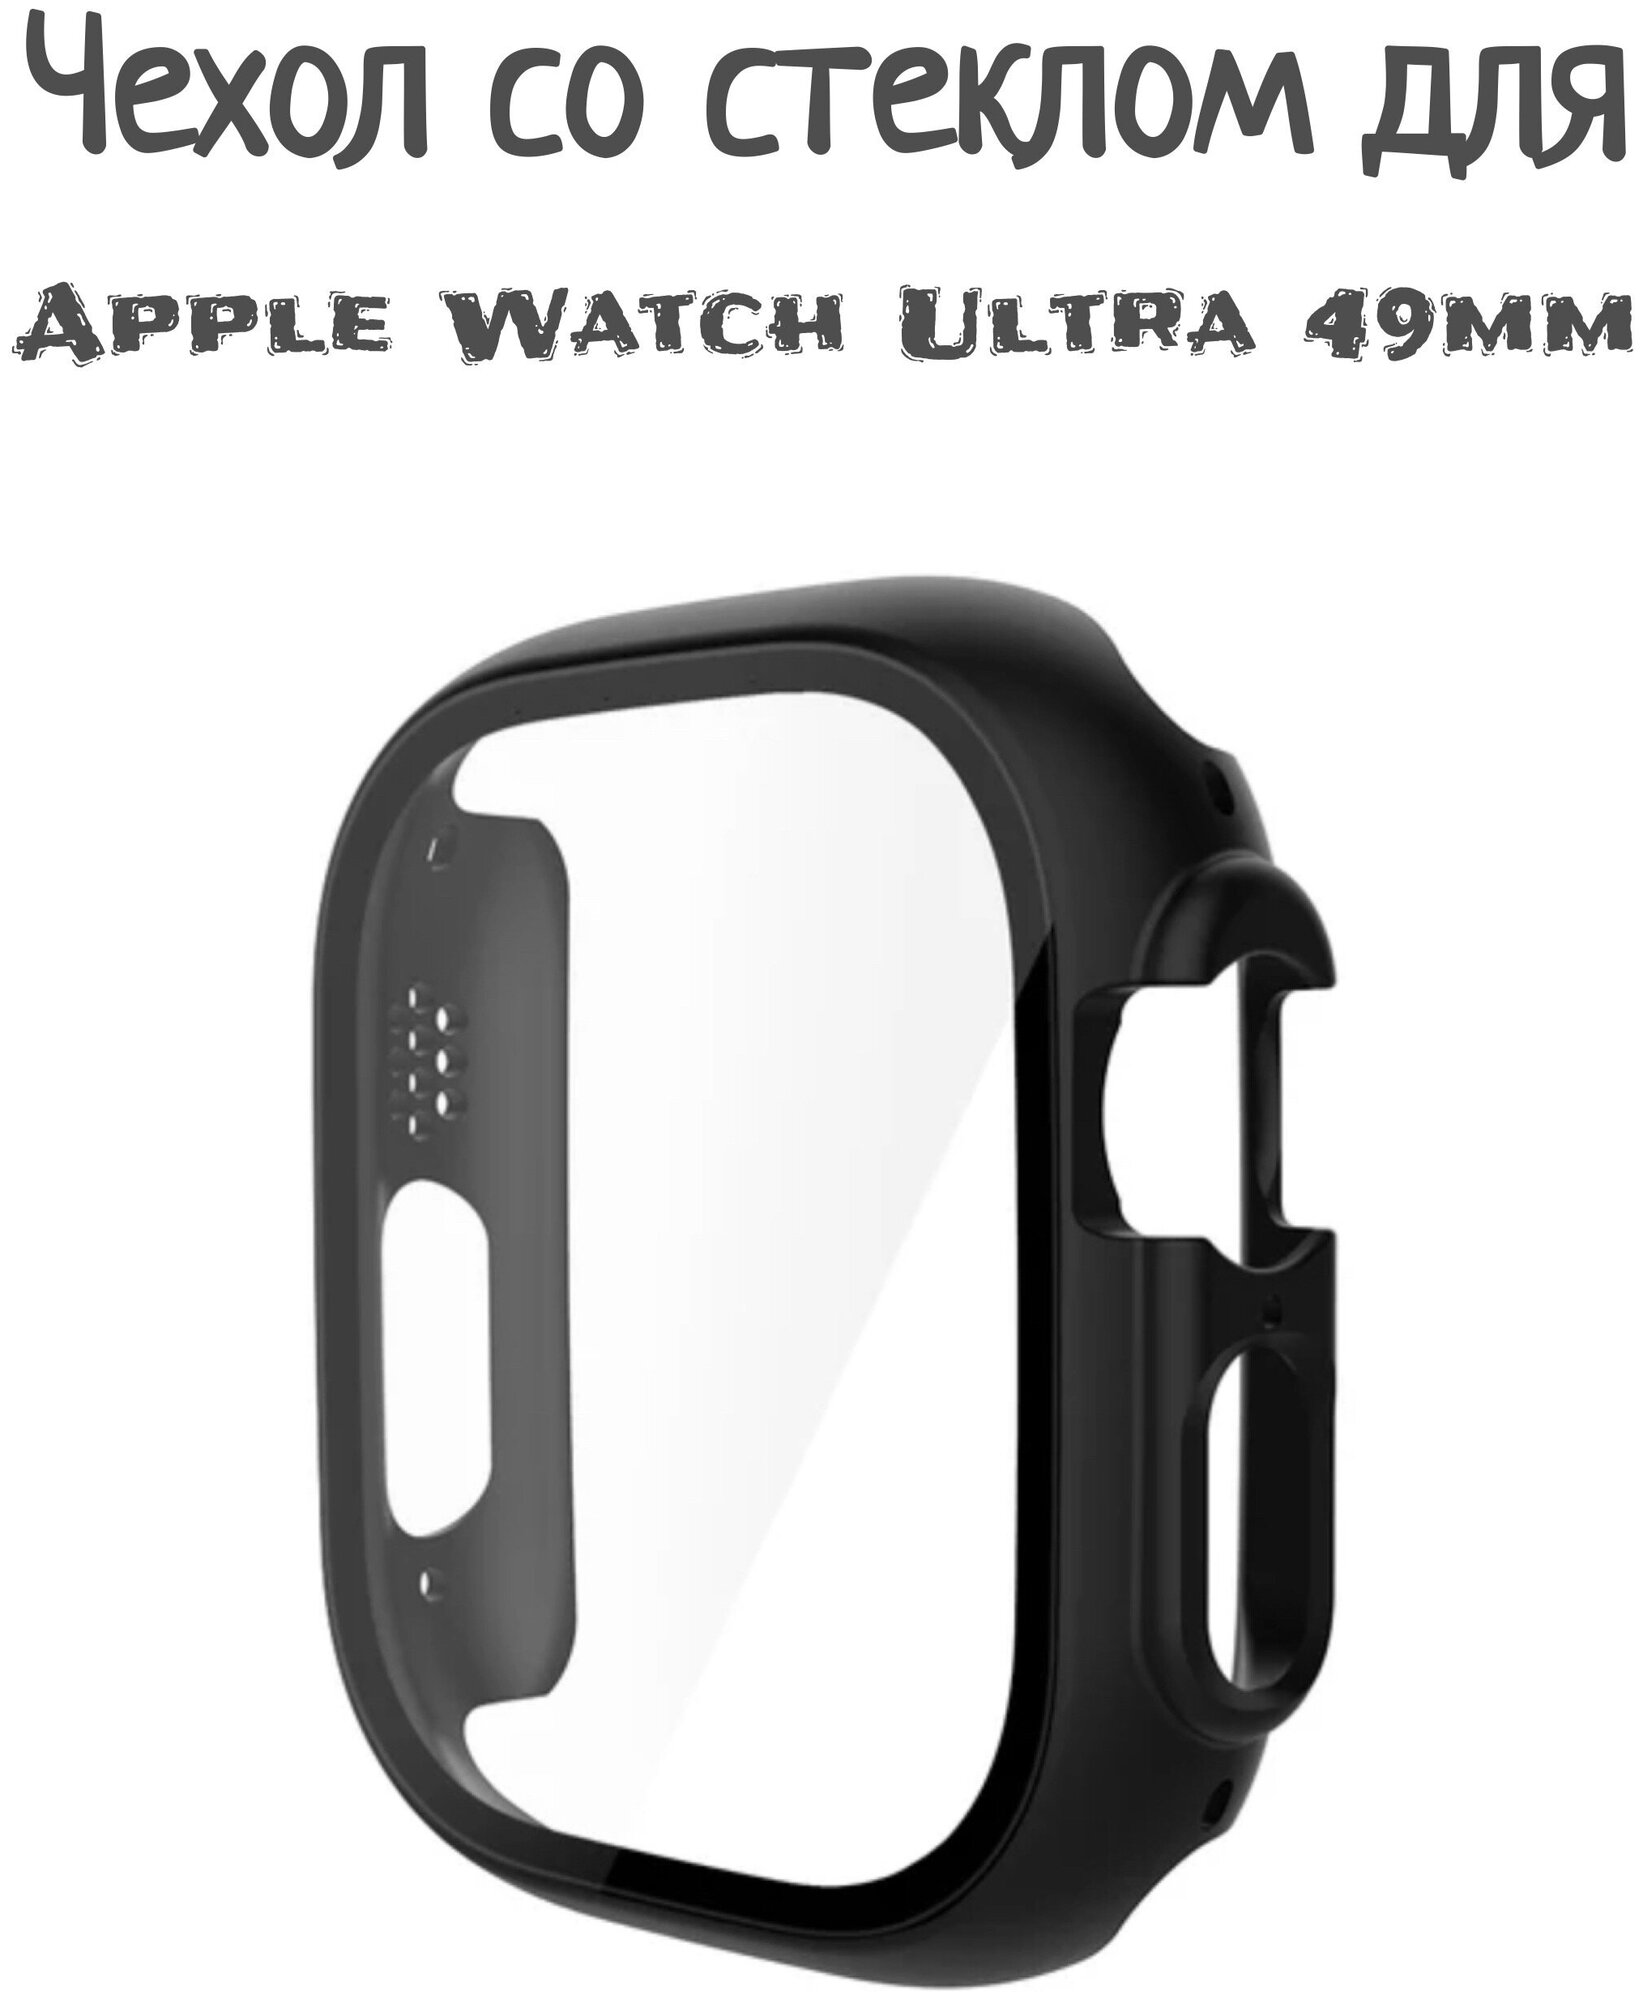 Чехол со стеклом для Apple Watch Ultra 49 mm черный